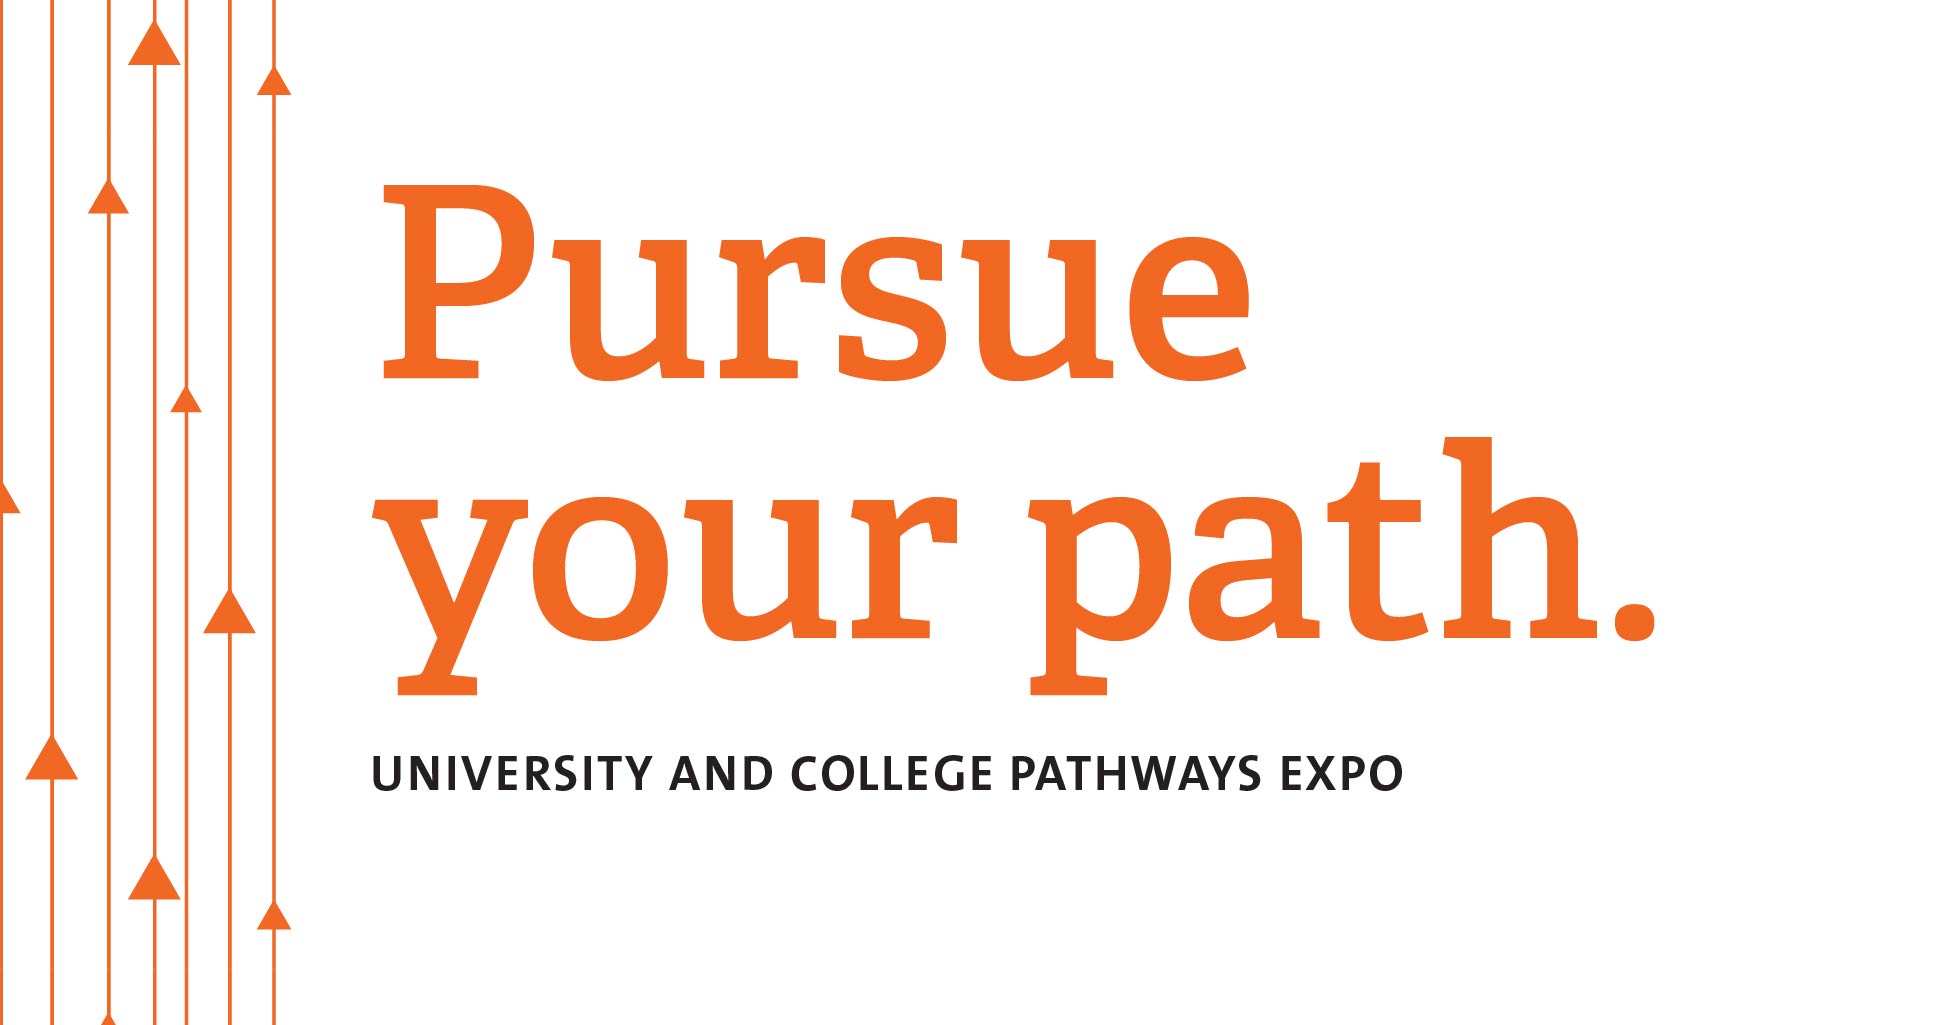 Nov. 1 – University And College Pathways Expo